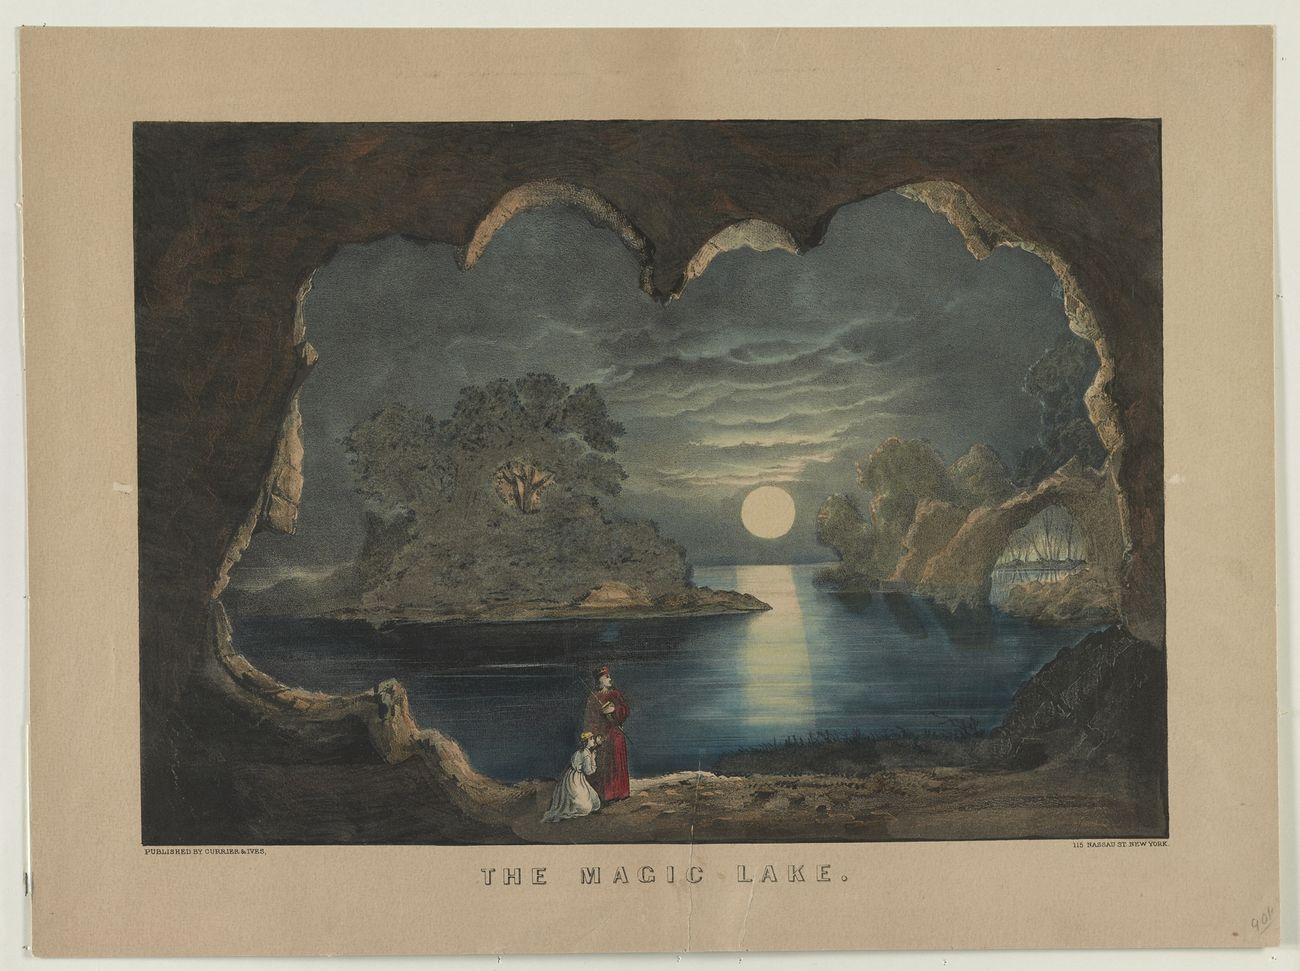 The magic lake